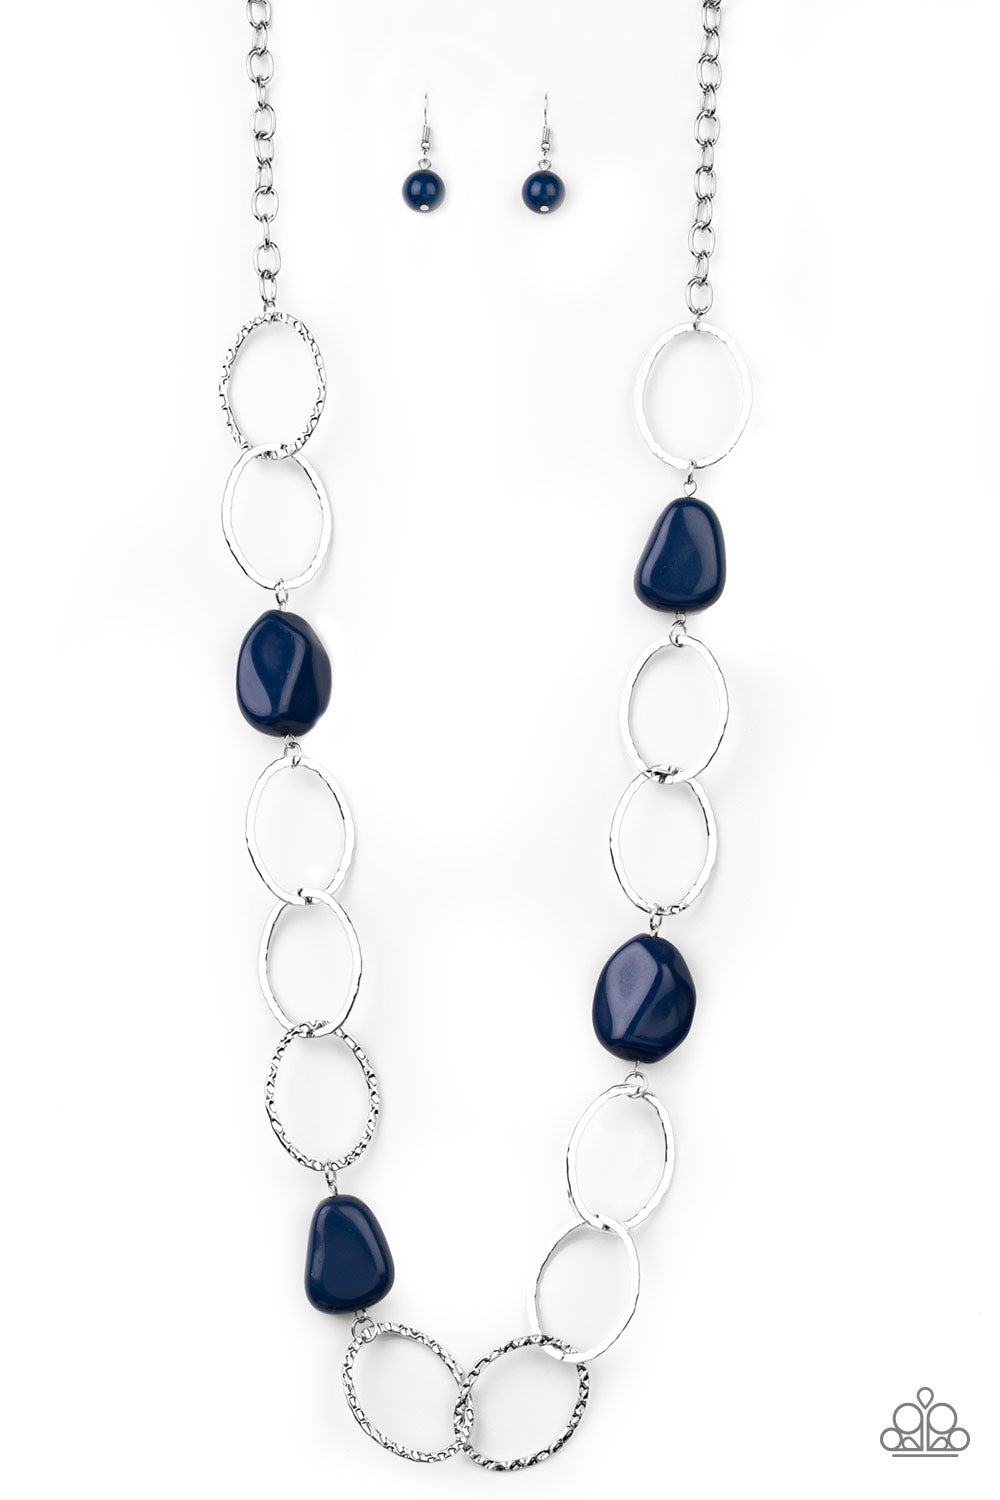 Modern Day Malibu - Blue necklace